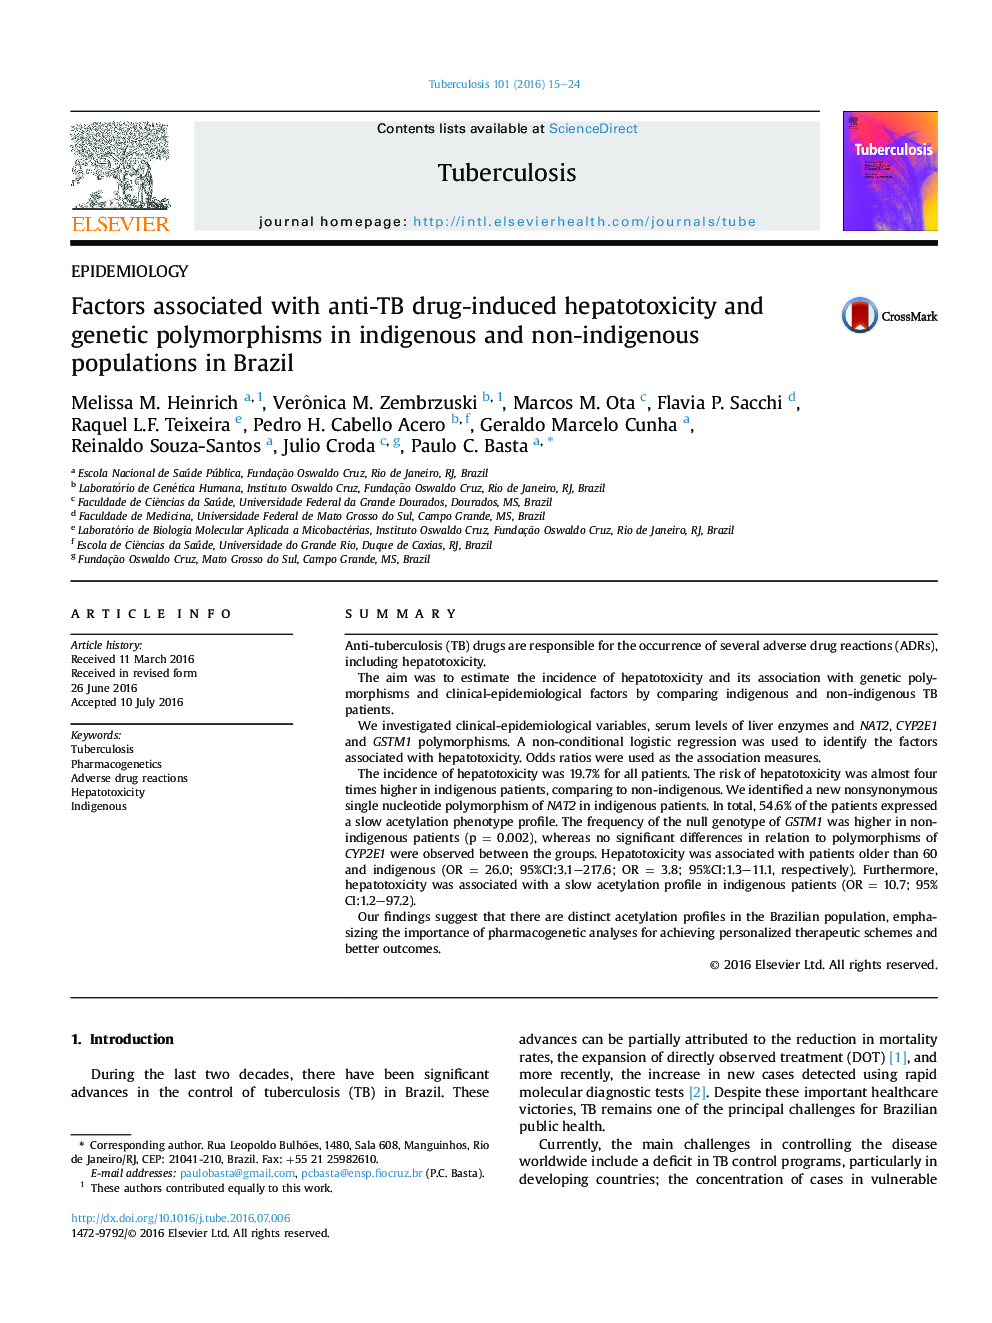 عوامل مرتبط با سمیت کبدی ناشی از داروی ضدسل و پلی مورفیسم ژنتیکی در جمعیت های بومی و غیربومی در برزیل